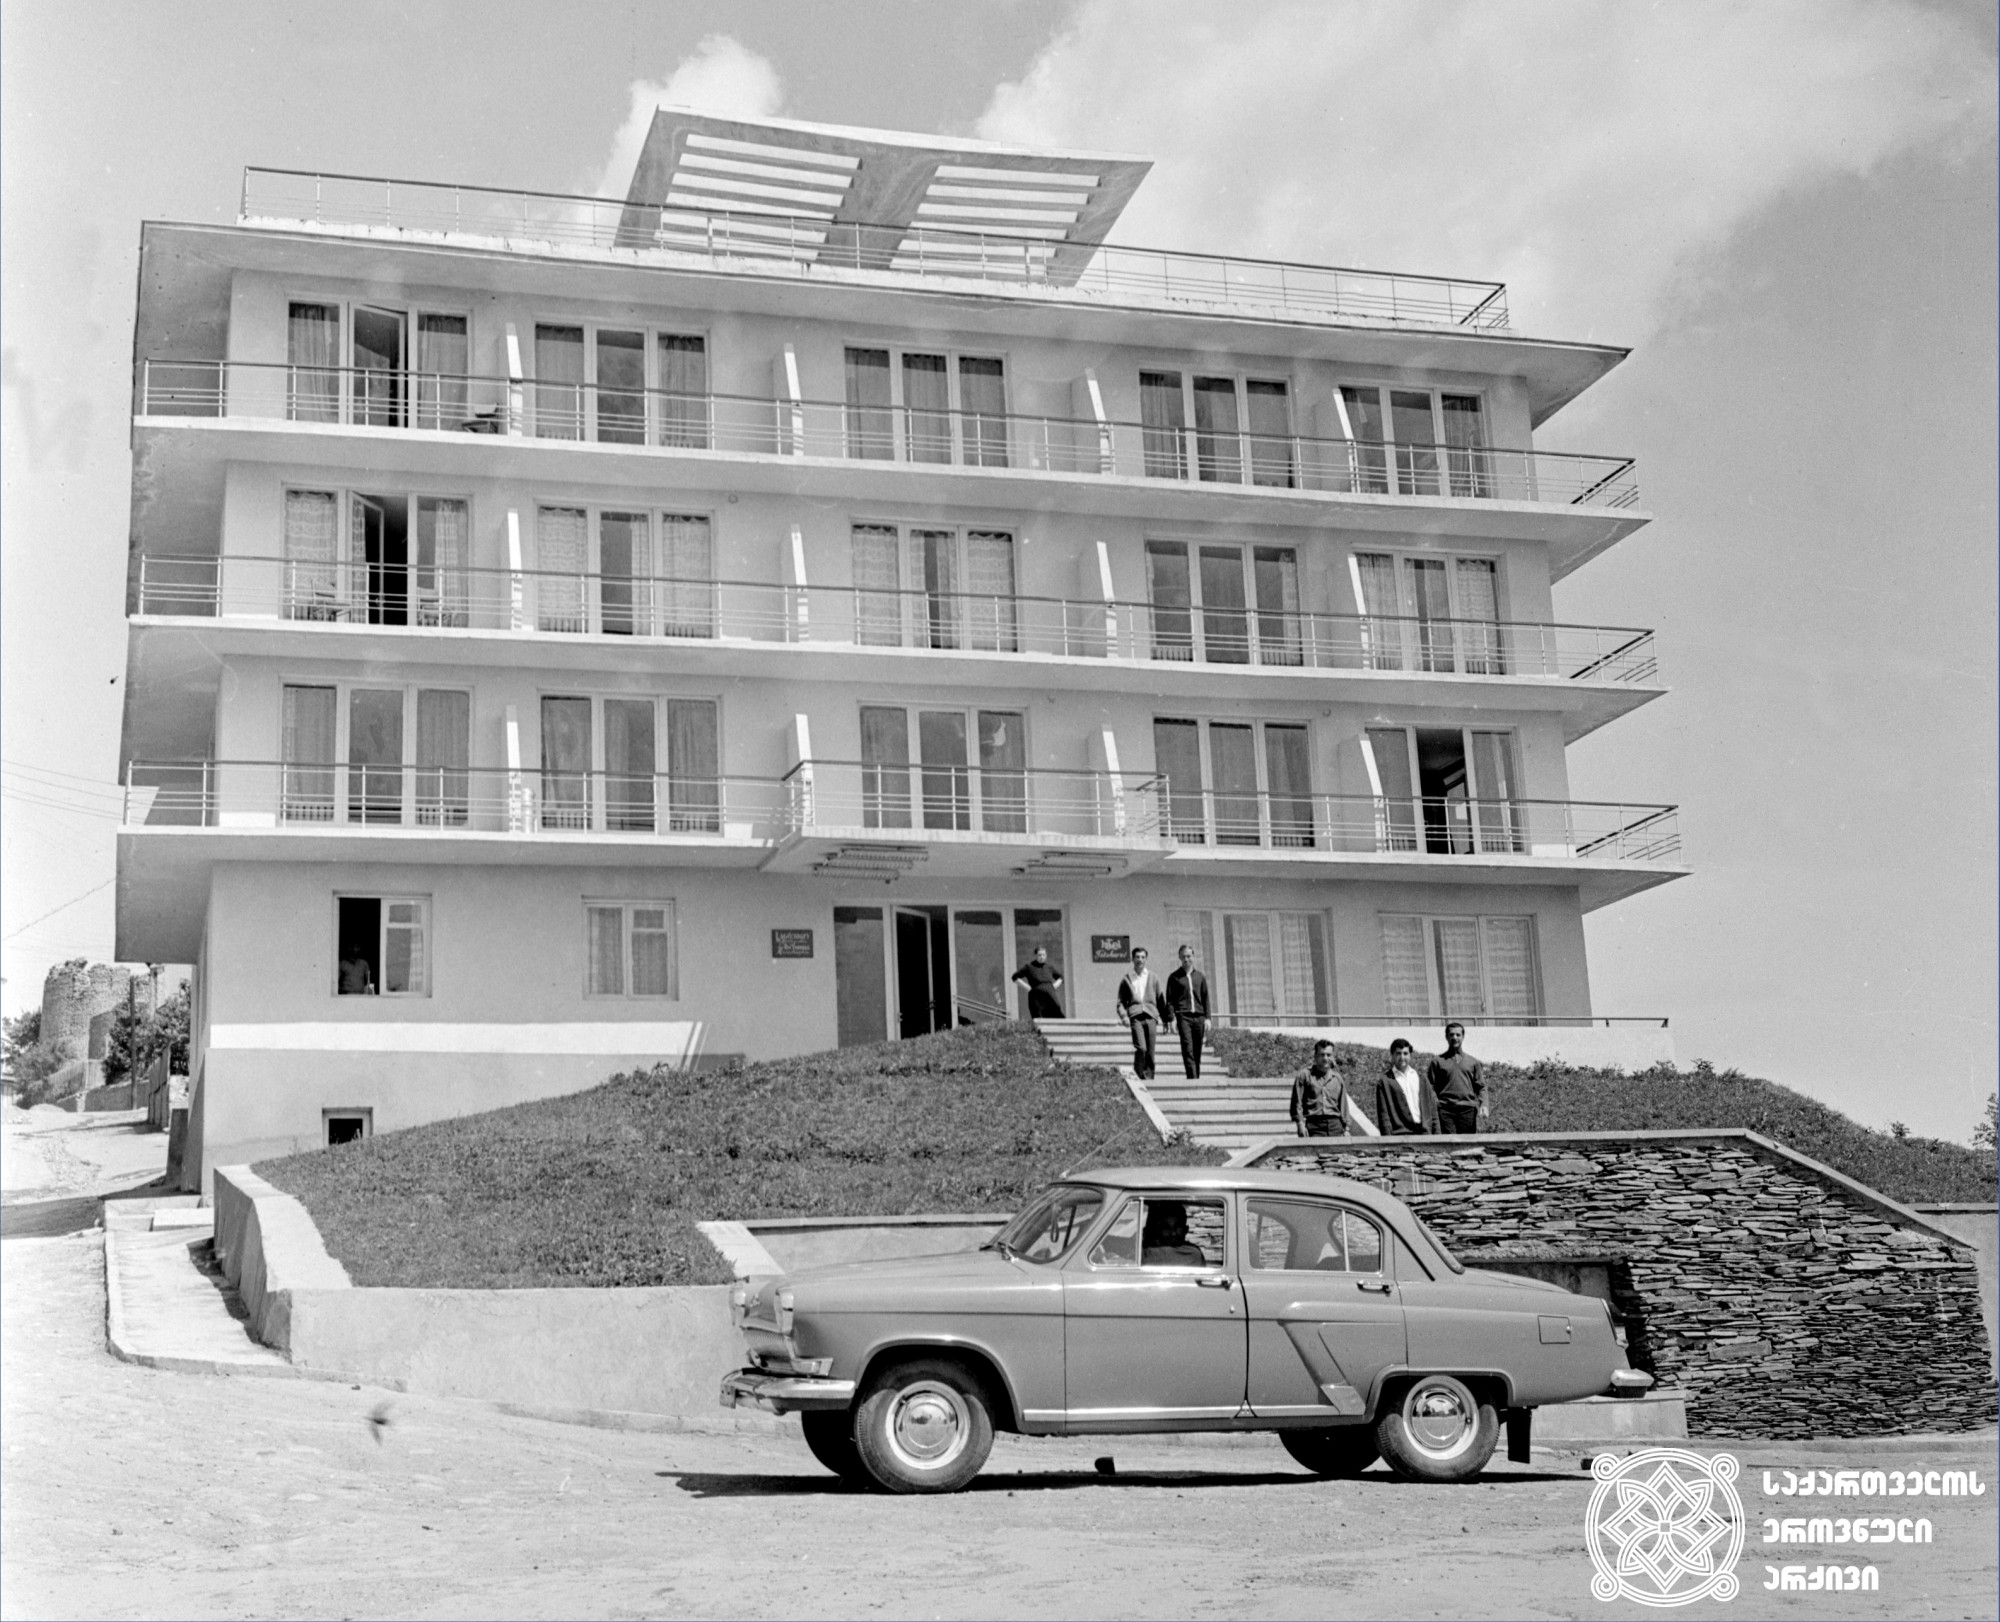 სანატორიუმი „ცისკარი“. სიღნაღი, 1967 წელი. <br>
აშენდა 1960 წელს. არქიტექტორი დიმიტრი მელიქიშვილი. <br>
ფოტოს ავტორი ი. დავითაშვილი. <br>
სიღნაღი — სიღნაღის მუნიციპალიტეტის ადმინისტრაციული ცენტრი.  ქალაქი განლაგებულია მაღალბორცვიან ადგილას და გადაჰყურებს ალაზნის ველსა და კავკასიონის ქედებს. მდებარეობს ცივგომბორის ქედის ჩრდილო კალთაზე, ზღვის დონიდან 750 მეტრის სიმაღლეზე. <br>
The general view of the sanatorium "Tsiskari". Sighnaghi, 1967. <br>
It was built in 1960. Architect – Dimitri Melikishvili. <br>
Photo by I. Davitashvili. <br>
Sighnaghi – administrative center of Sighnaghi Municipality. The city is located in a high-altitude place and overlooks the vast expanse of the Alazani Valley and the Caucasus Mountains. It is located on the northern slope of the Tsivgombori ridge, at an altitude of 750 meters above the sea level. <br>